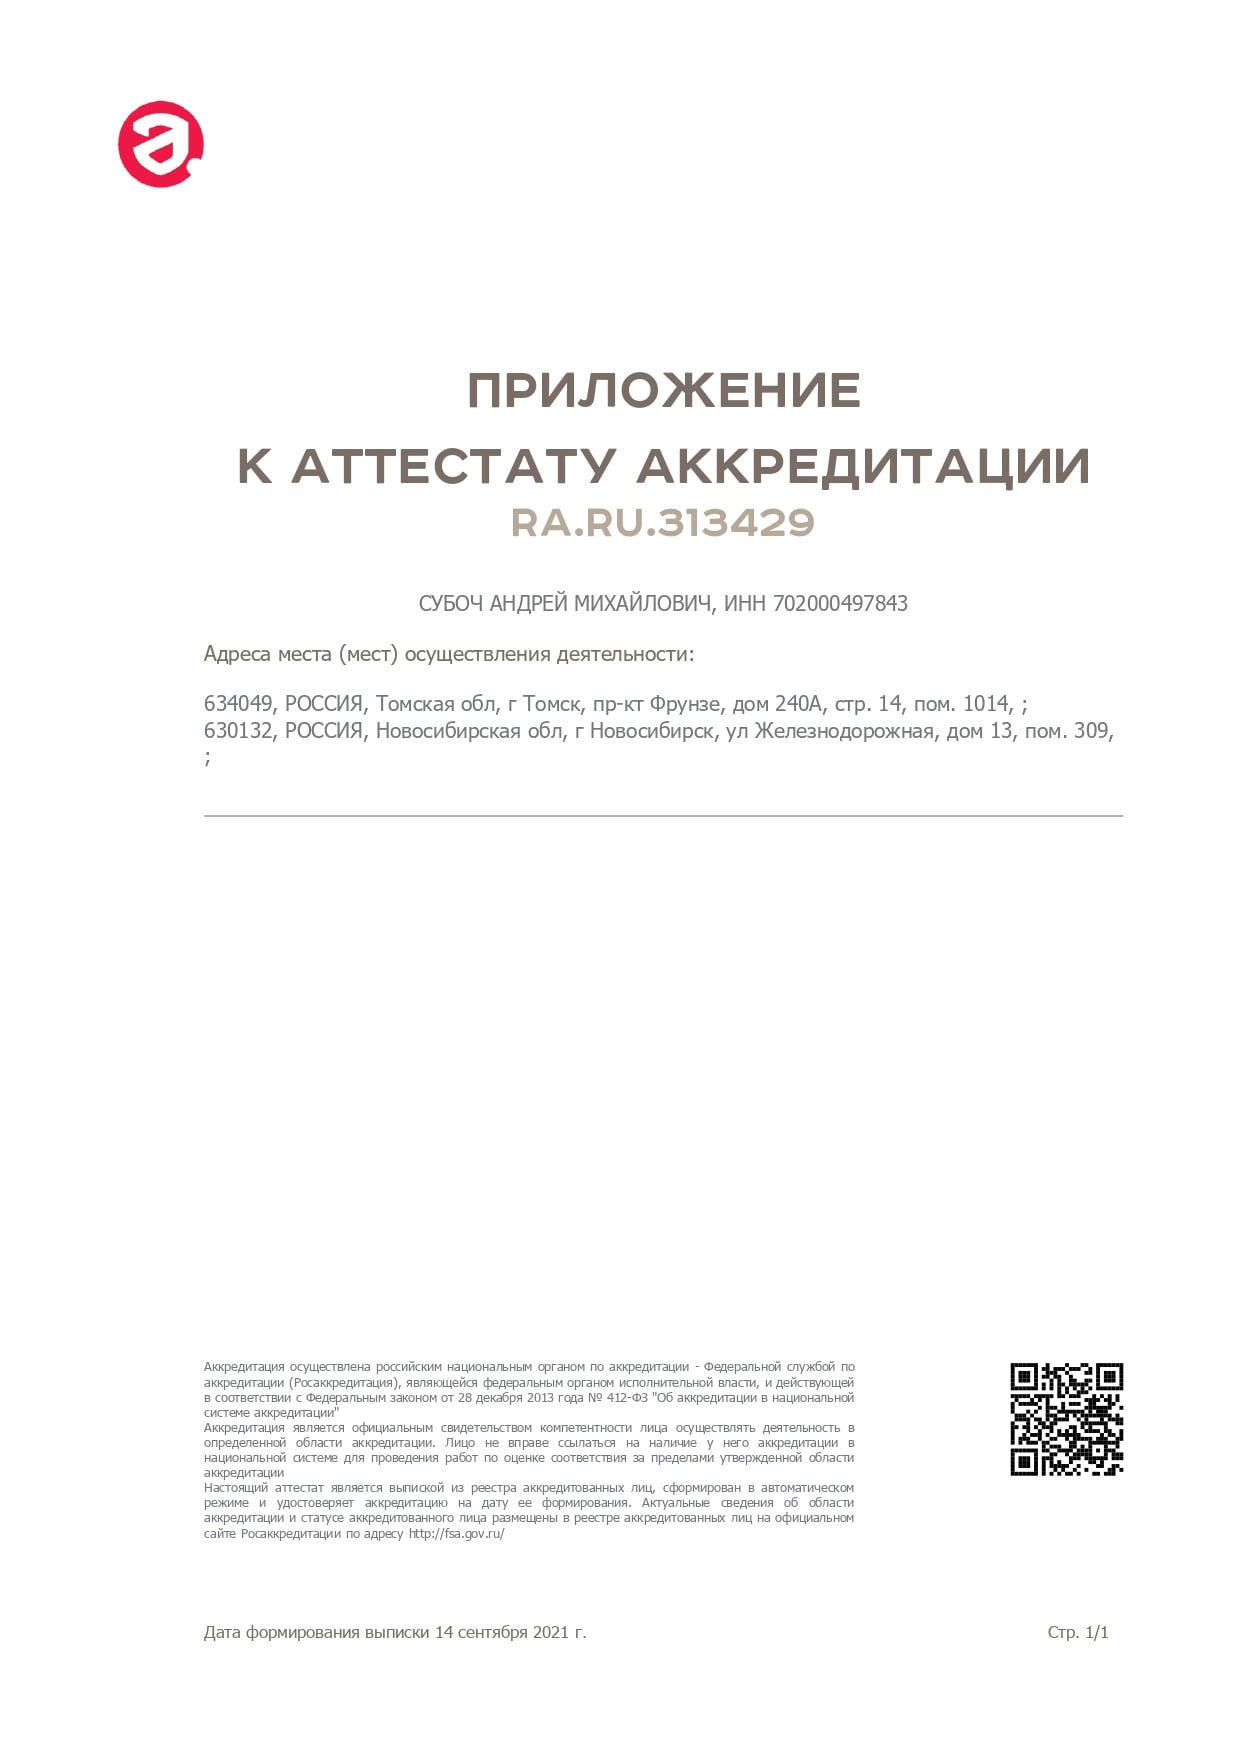 Приложение к аттестату аккредитации RA.RU.313429 ИП Субоч